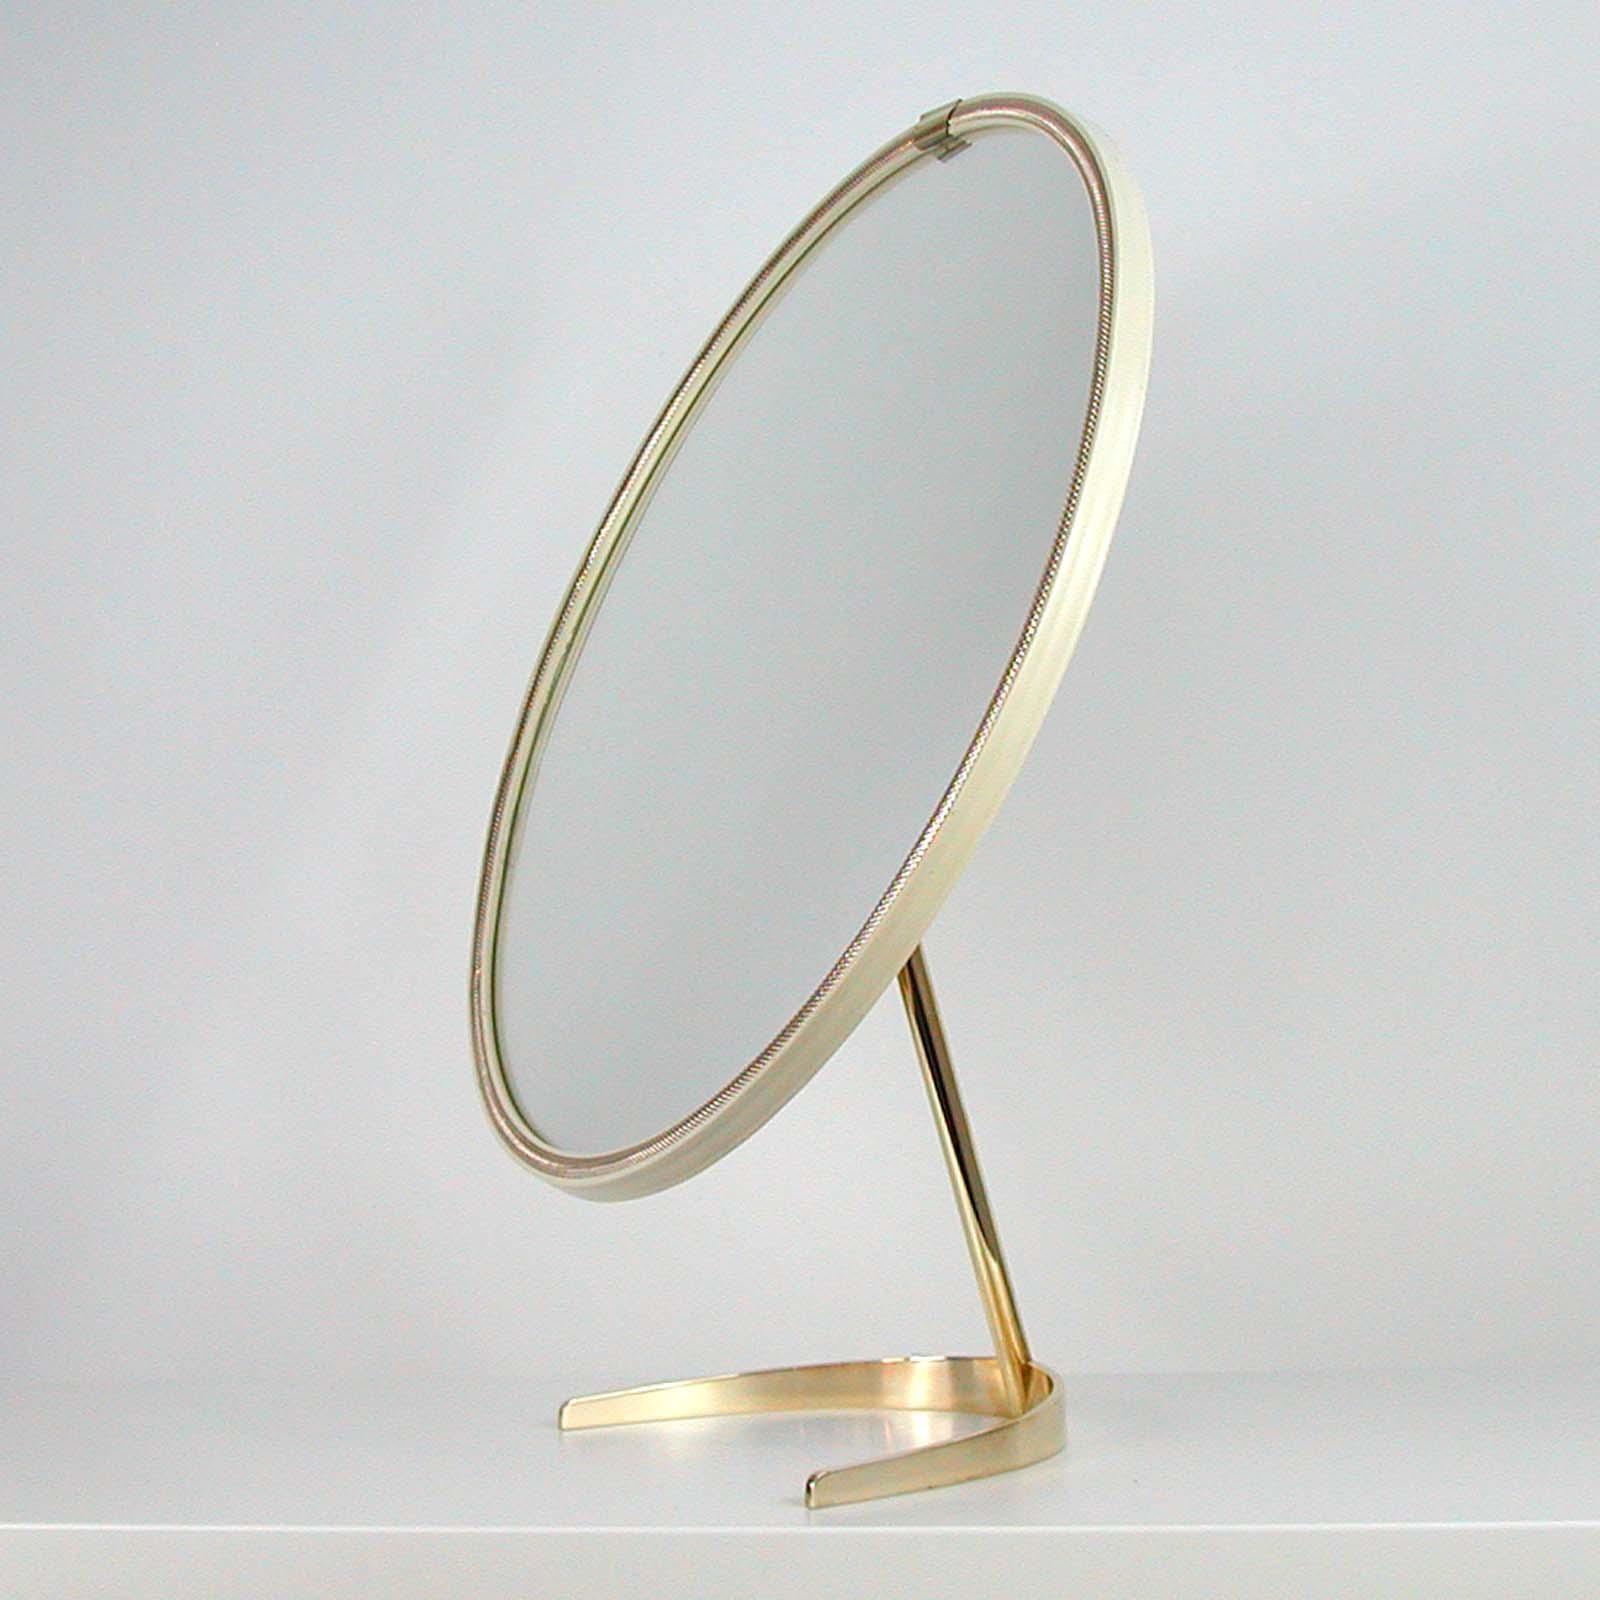 Mid-Century Modern Midcentury German Table Vanity Mirror by Vereinigte Werkstätten München, 1950s